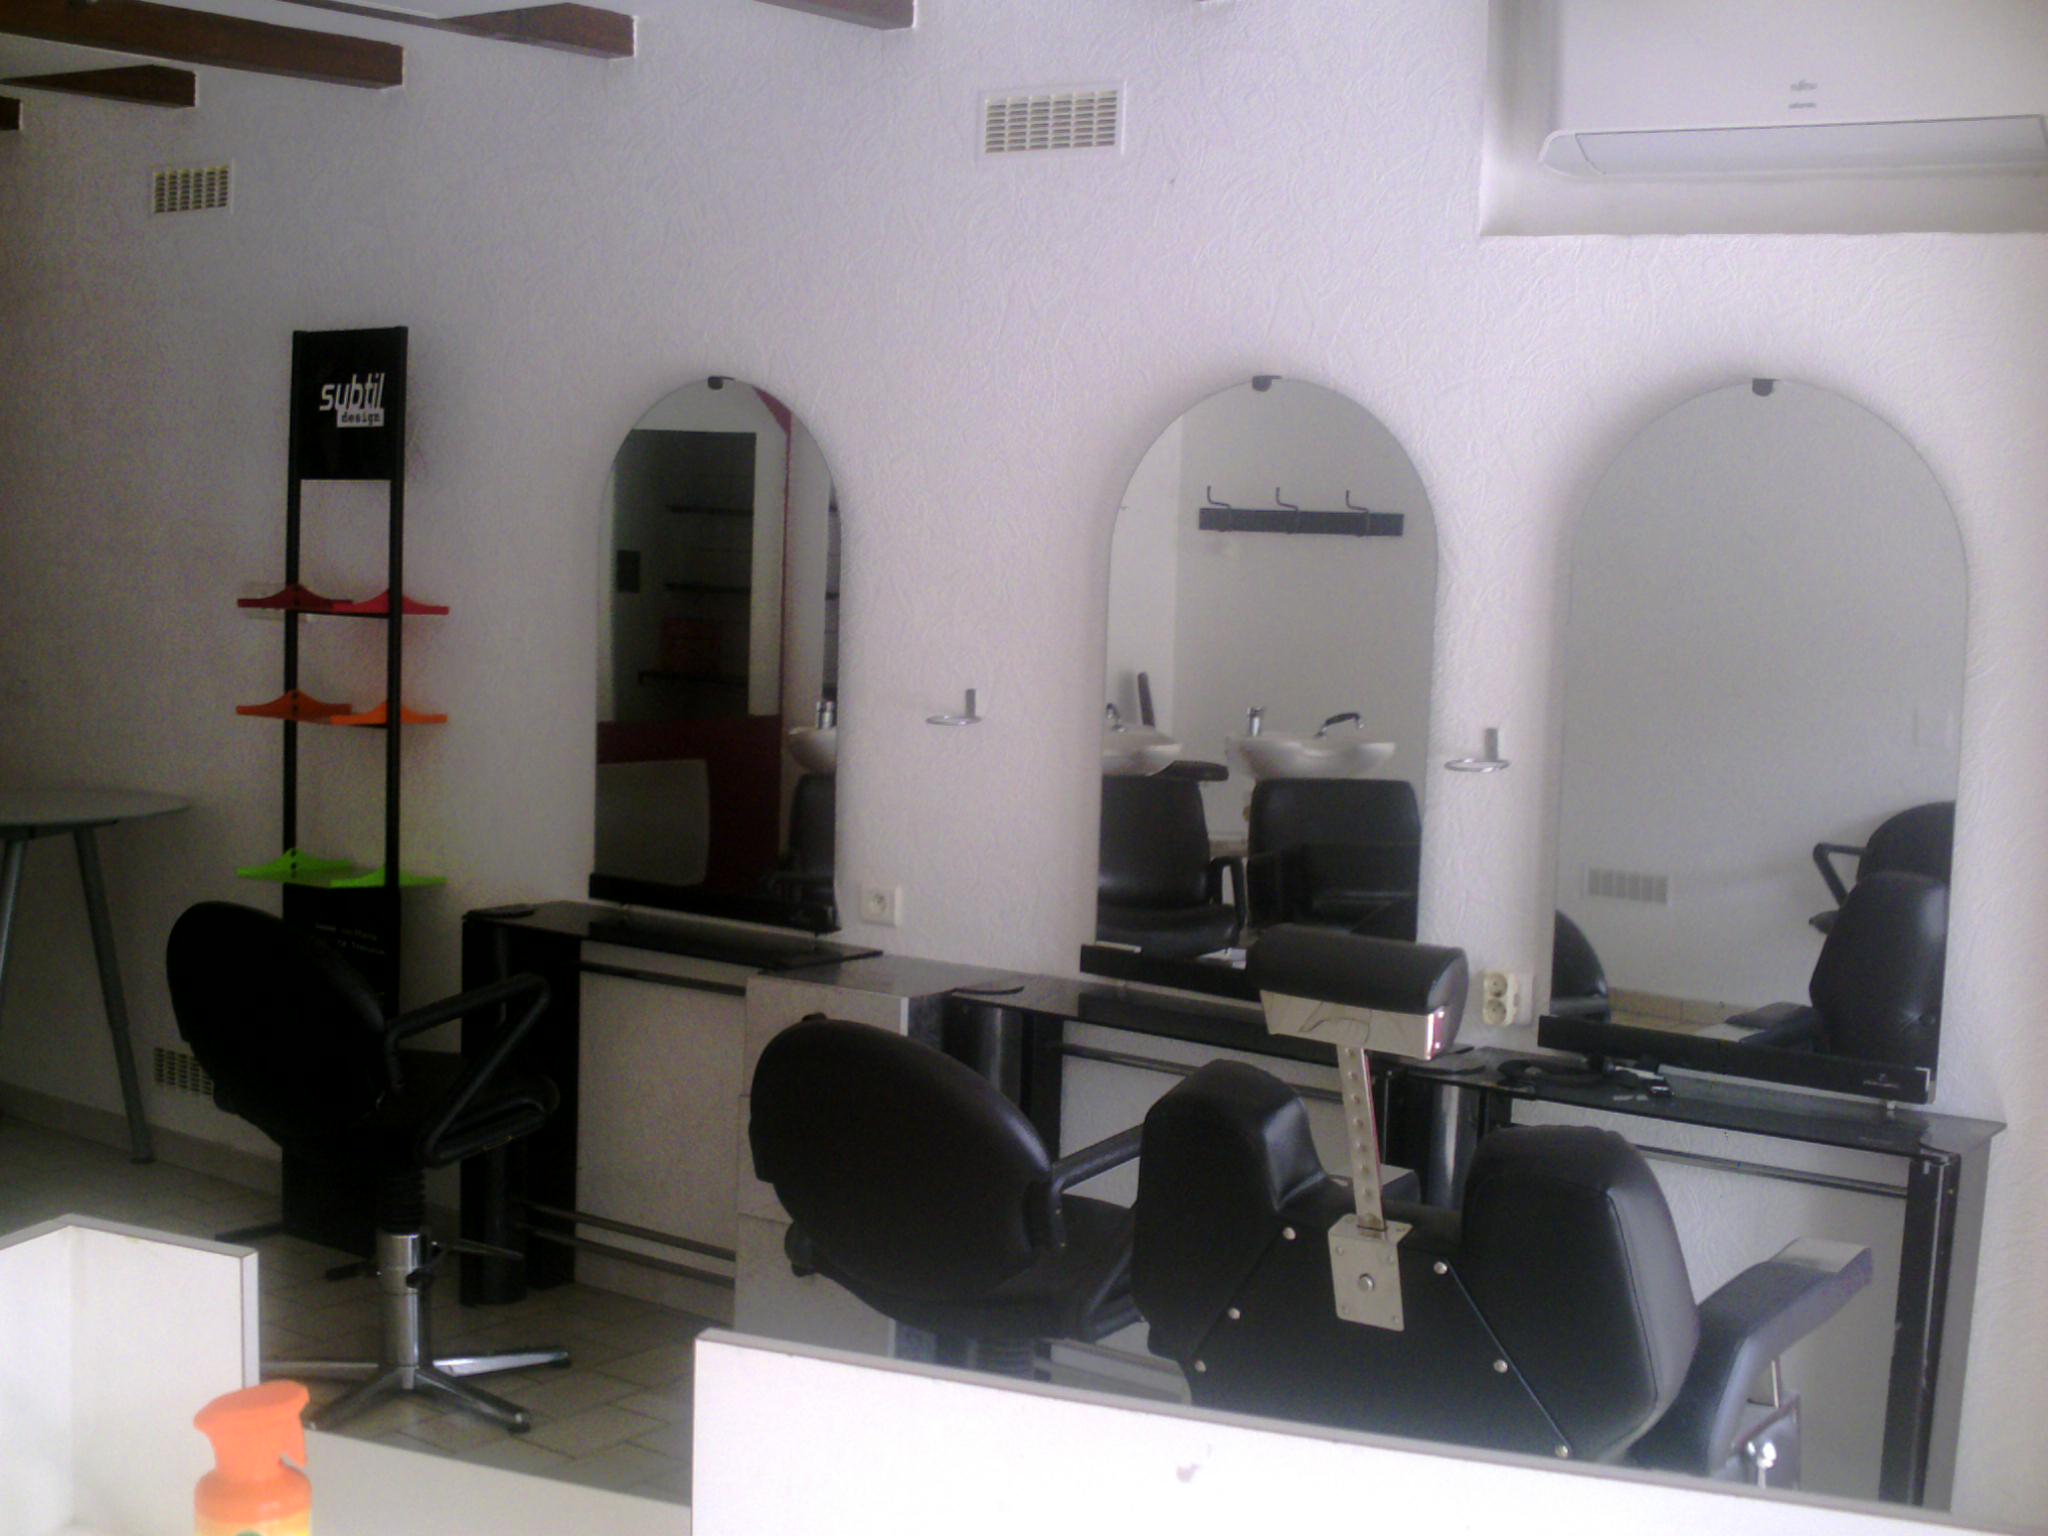 Vend Local salon de coiffure 28m² dans agréable petit village à 16 km de Lauzerte , 23km de Valence d'Agen . 34km d'Agen ,idéal pour un début de carrière .grand potentiel ,grosse demande , pas de coiffeur dans le secteur ,prés a fonctionner .